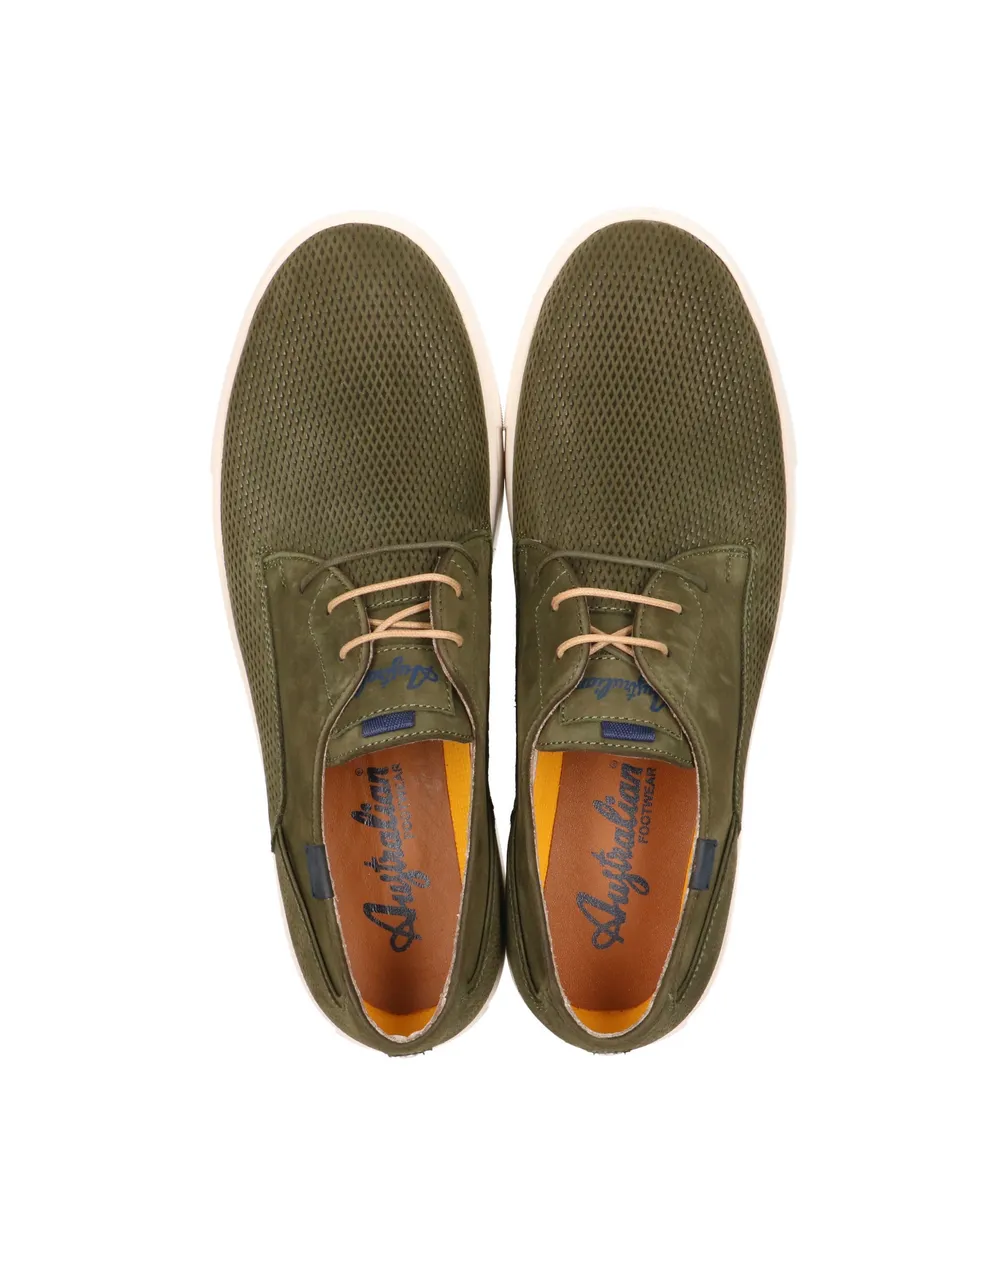 Australian Footwear Morris nubuck green 15.1559.01 eoo